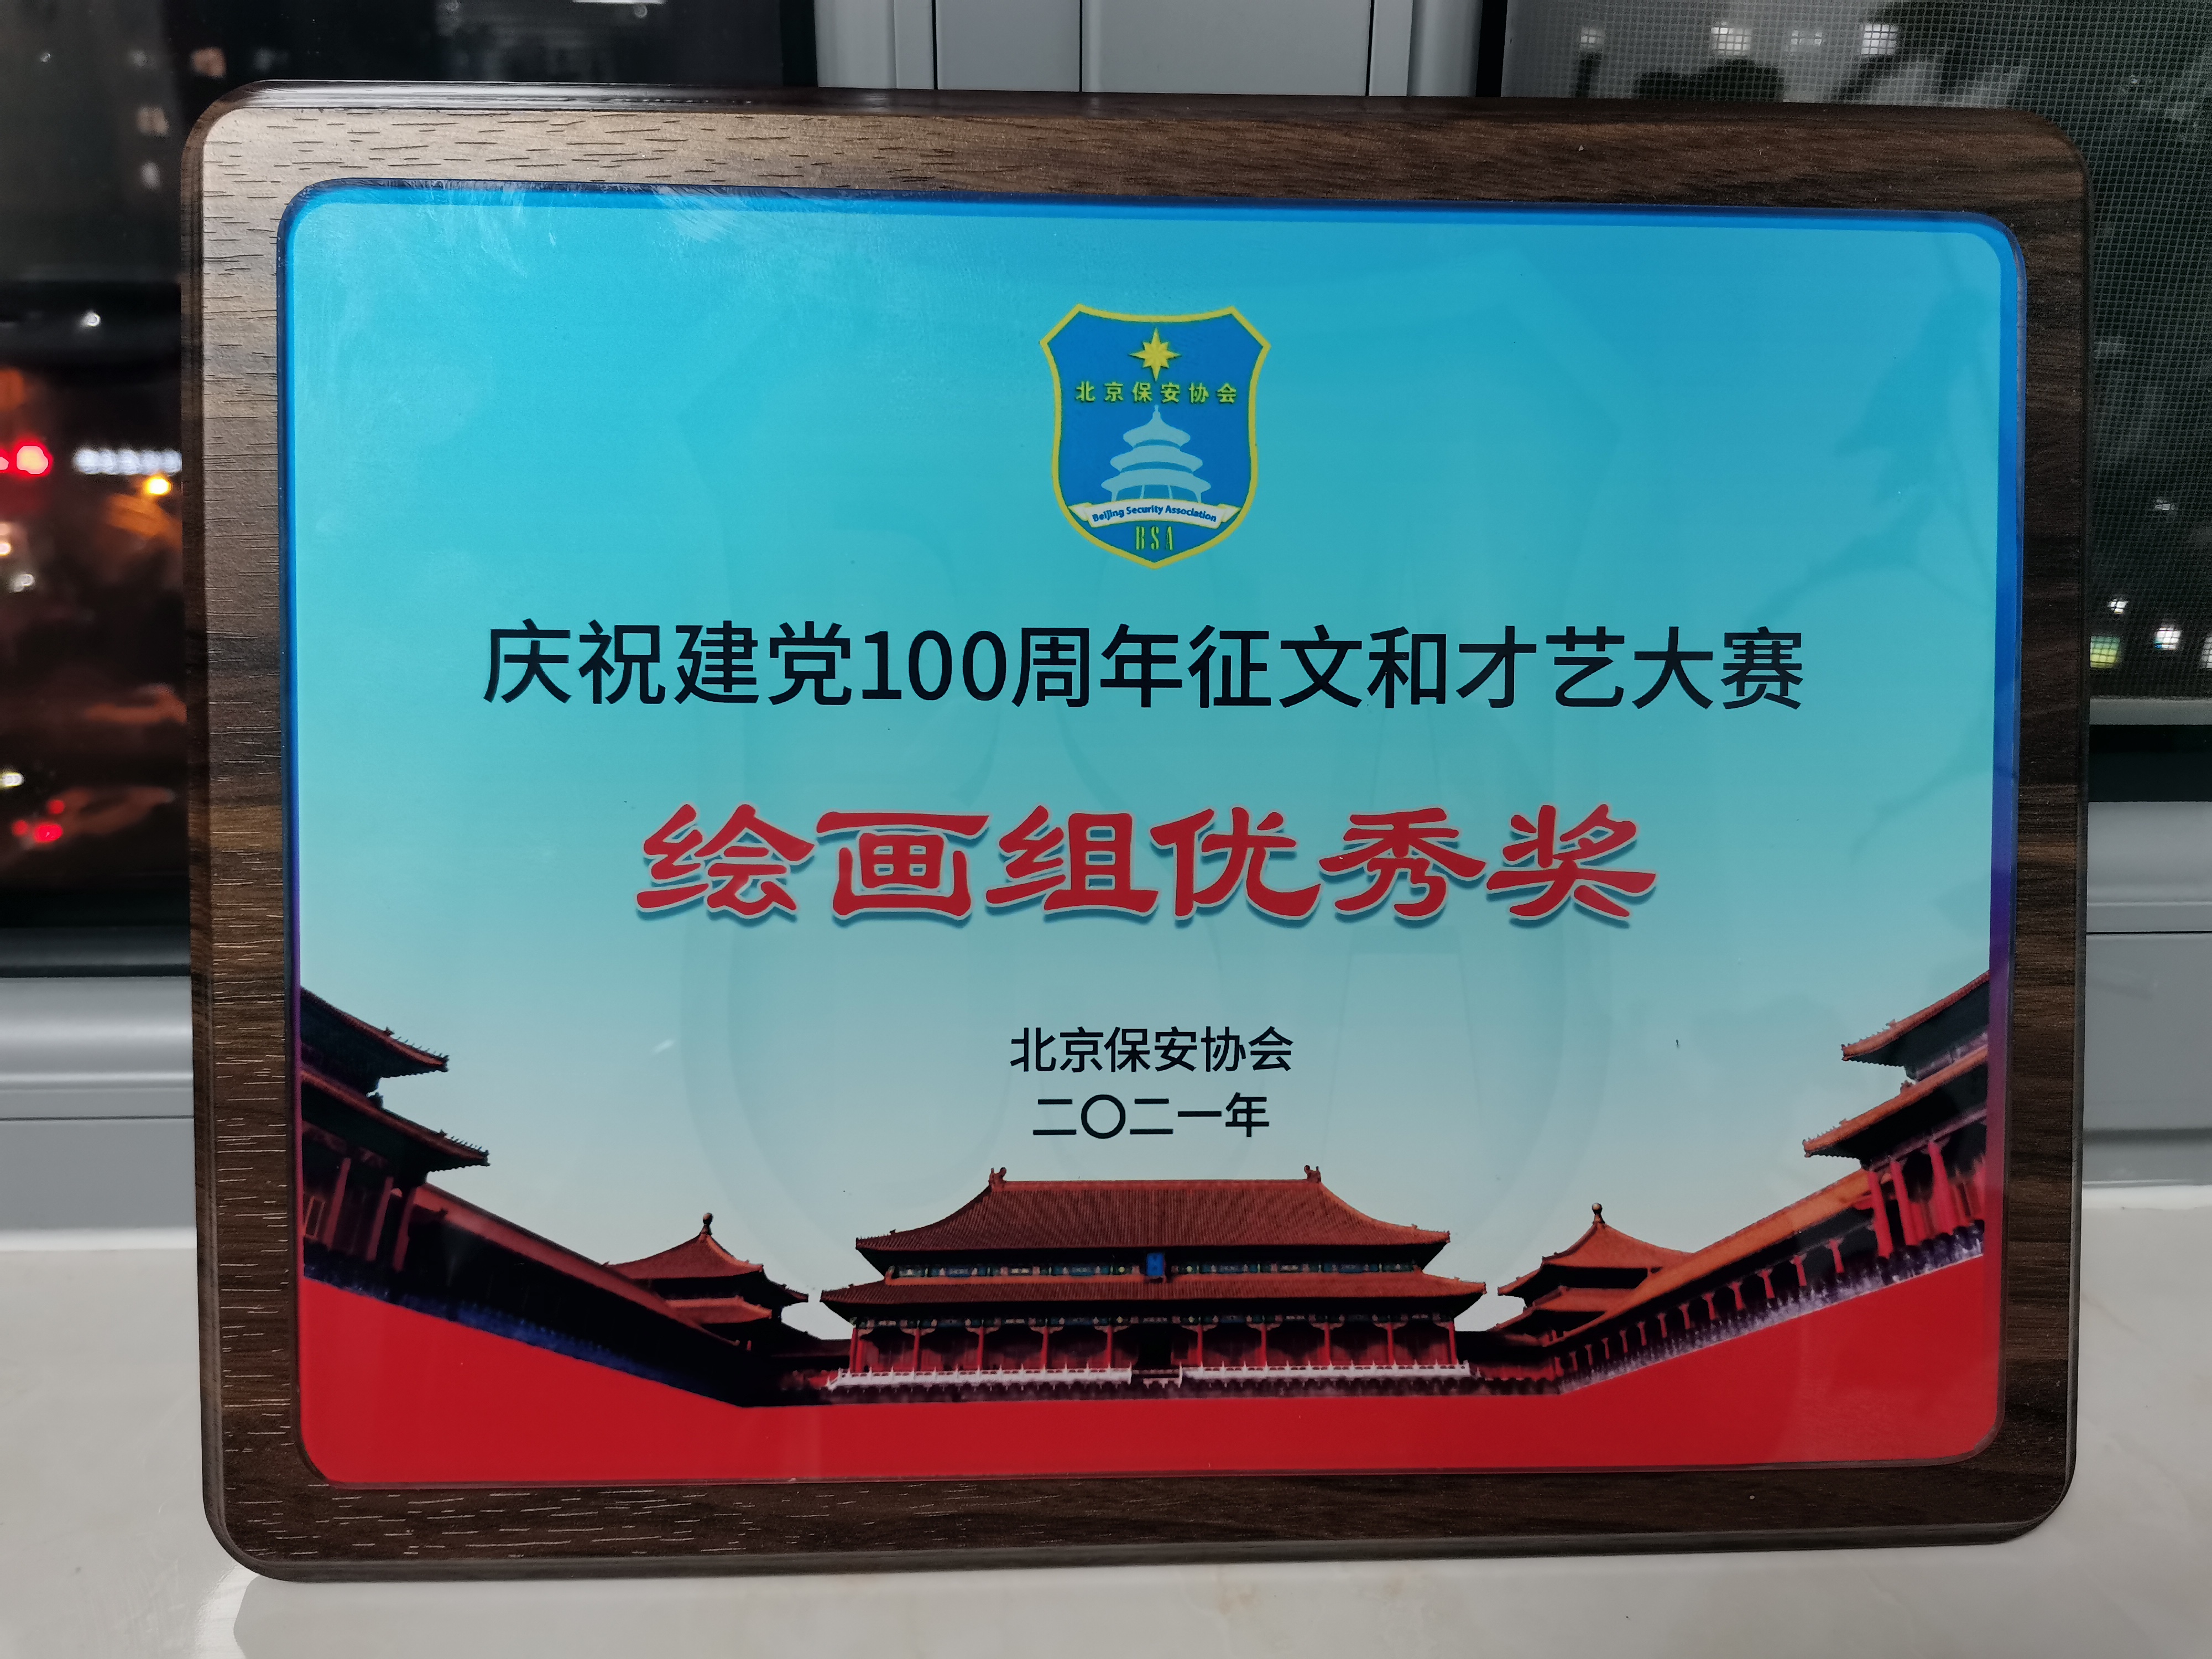 邸红敏同志在北京保安协会举办的庆祝建党100周年征文和才艺大赛上获得绘画组优秀奖